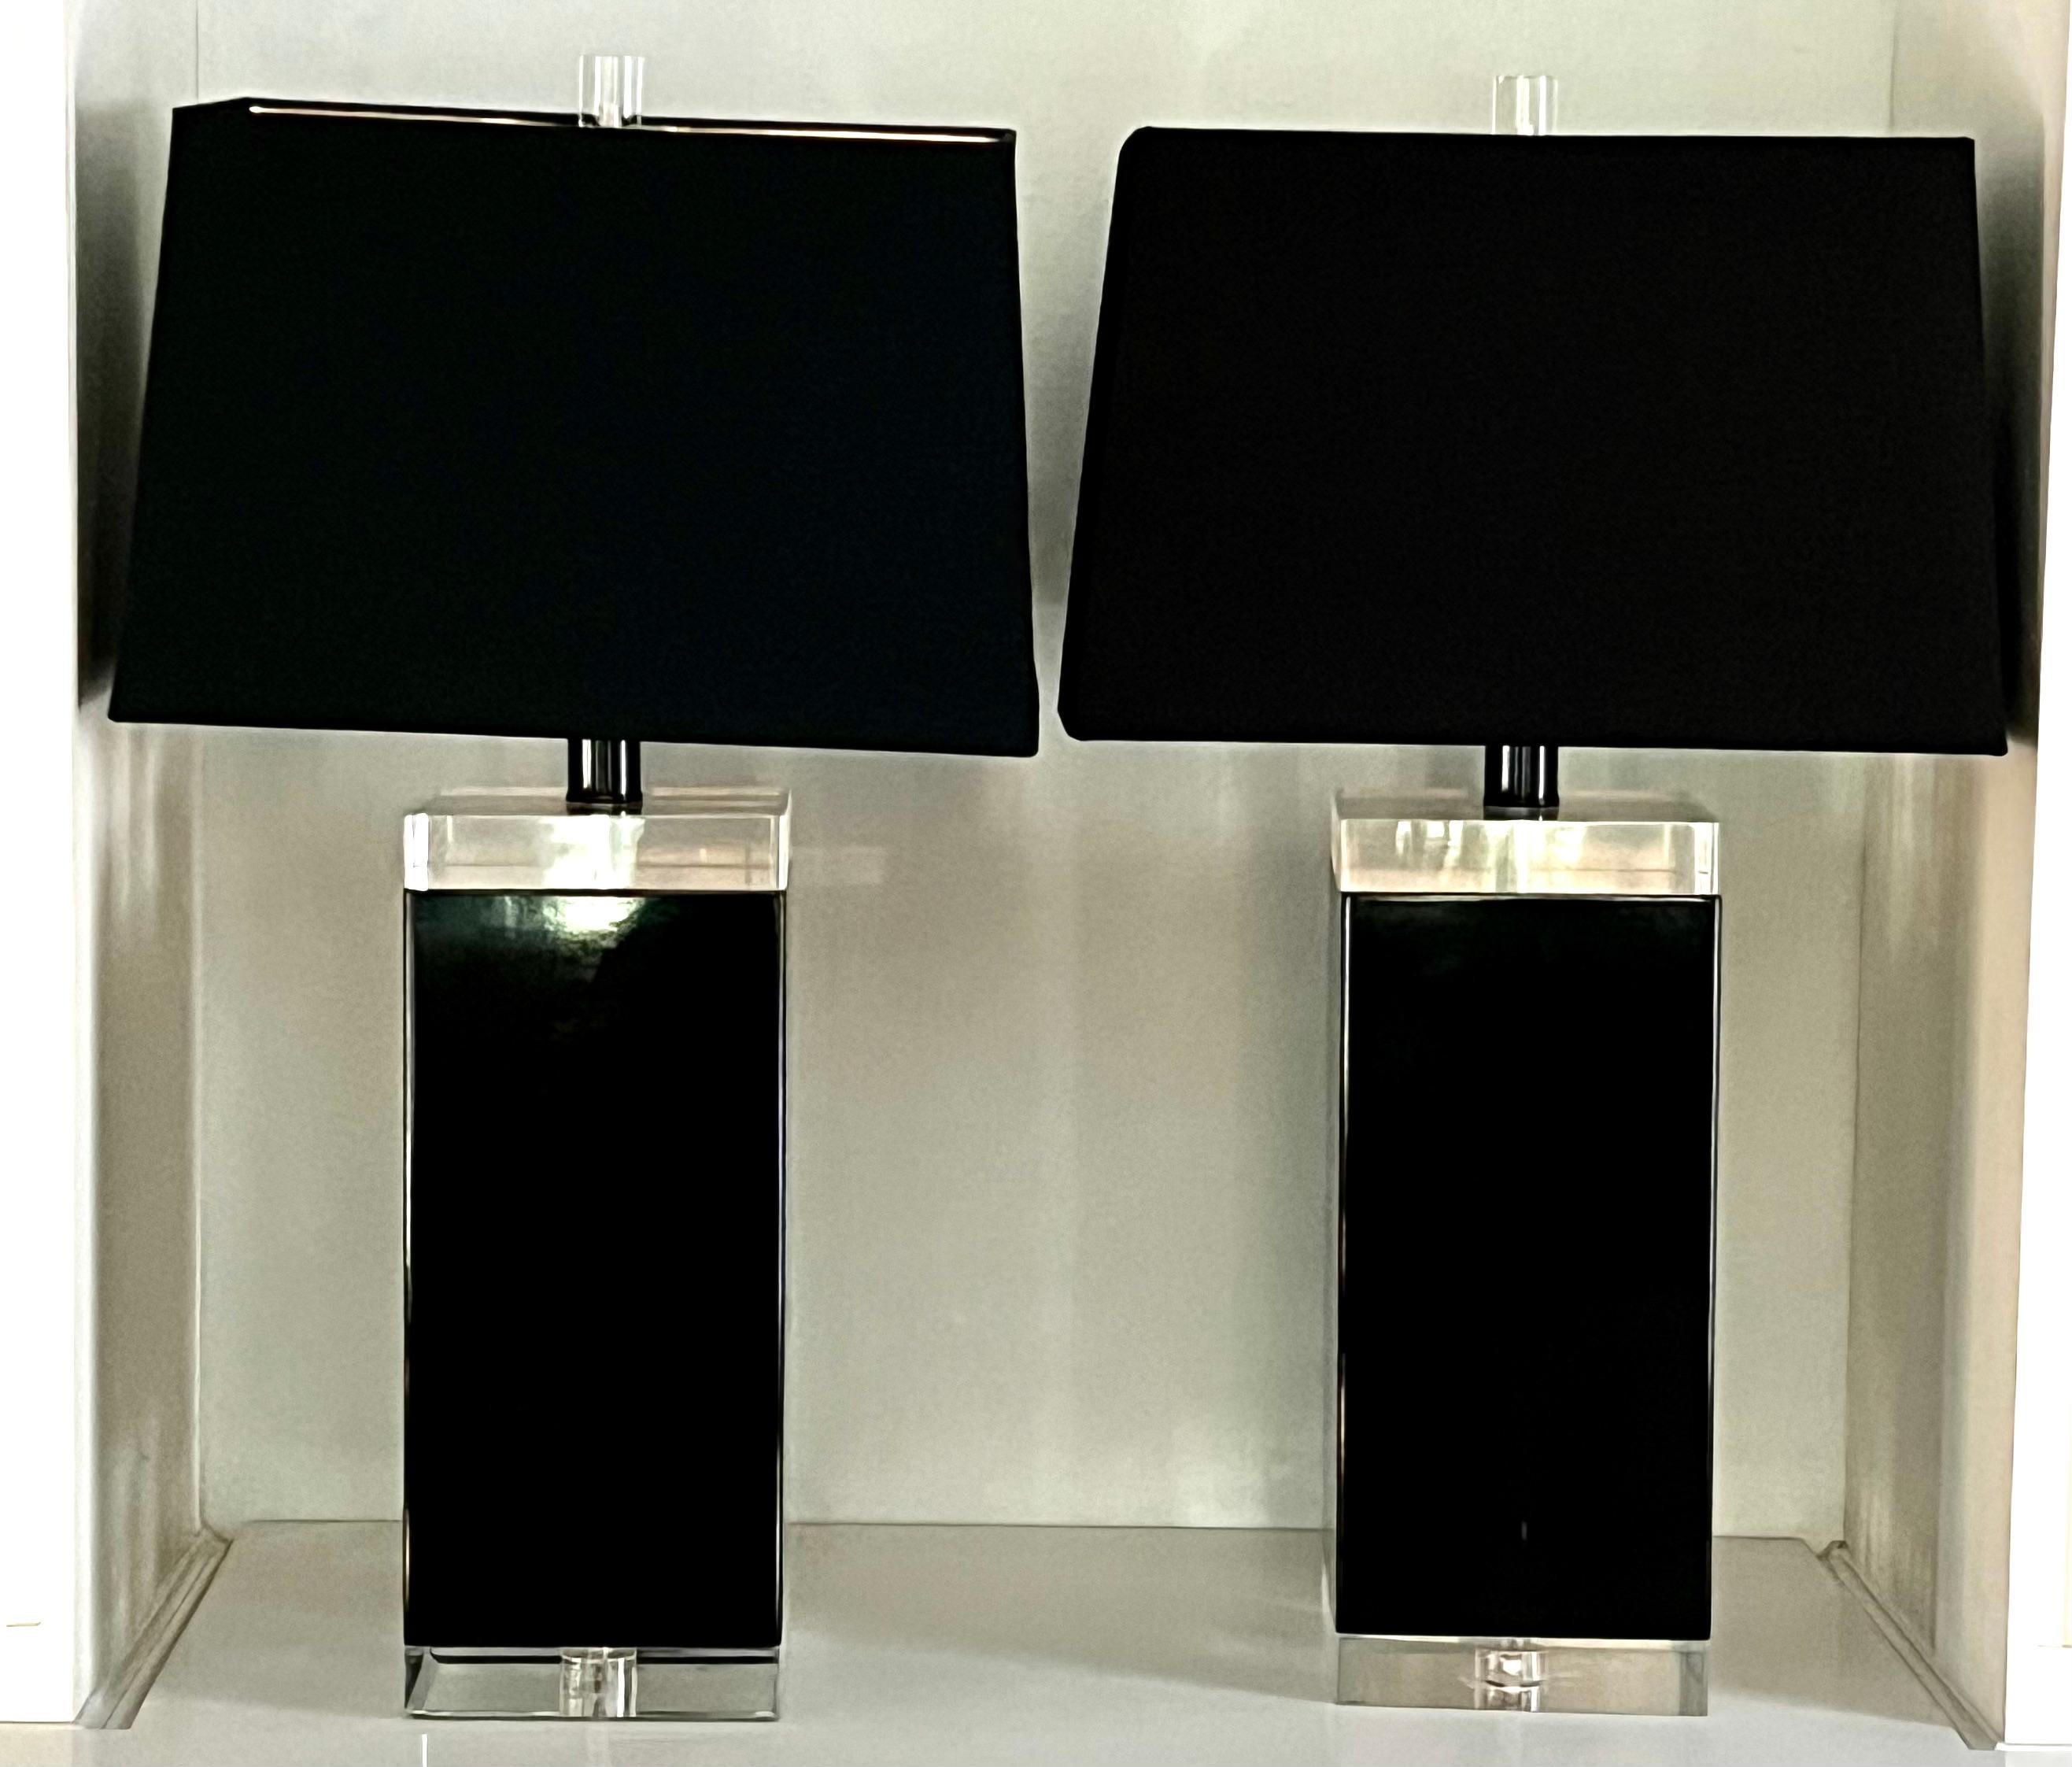 Ein Paar von Acryl Mid Century Modern Schwarz und klar Acryl-Lampen.  Die beiden sind groß und wichtig in Größe und Gewicht.  Das schwarze Acryl ist zwischen zwei dicken Stücken klarem Acryl eingebettet.  Das Paar ist in sehr gutem Zustand und